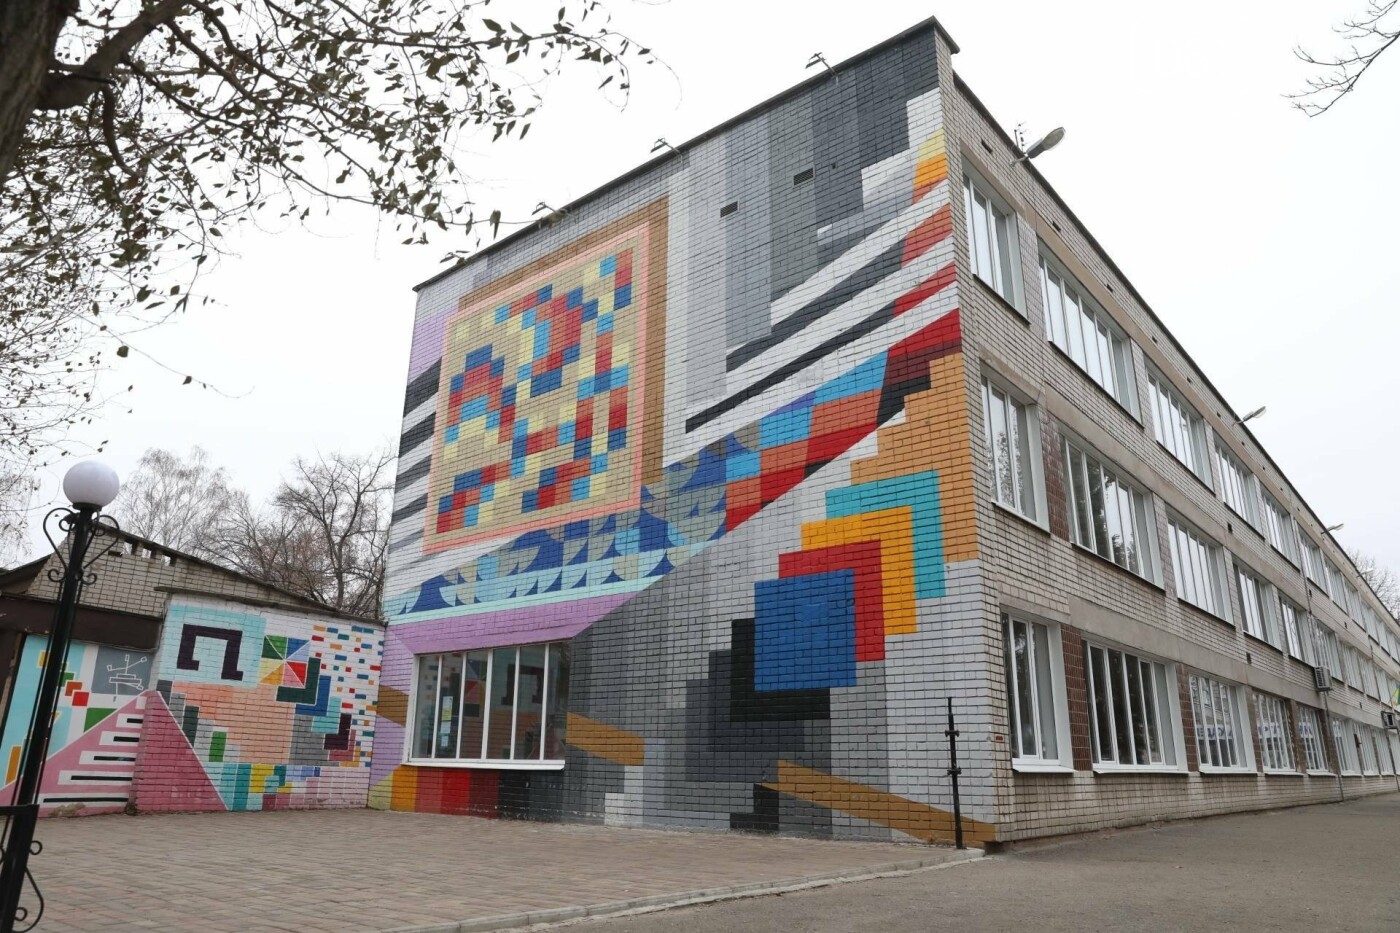  В запорожской школе проводят реконструкцию ливневки и ремонт крыши за 18 миллионов гривен, фото-2